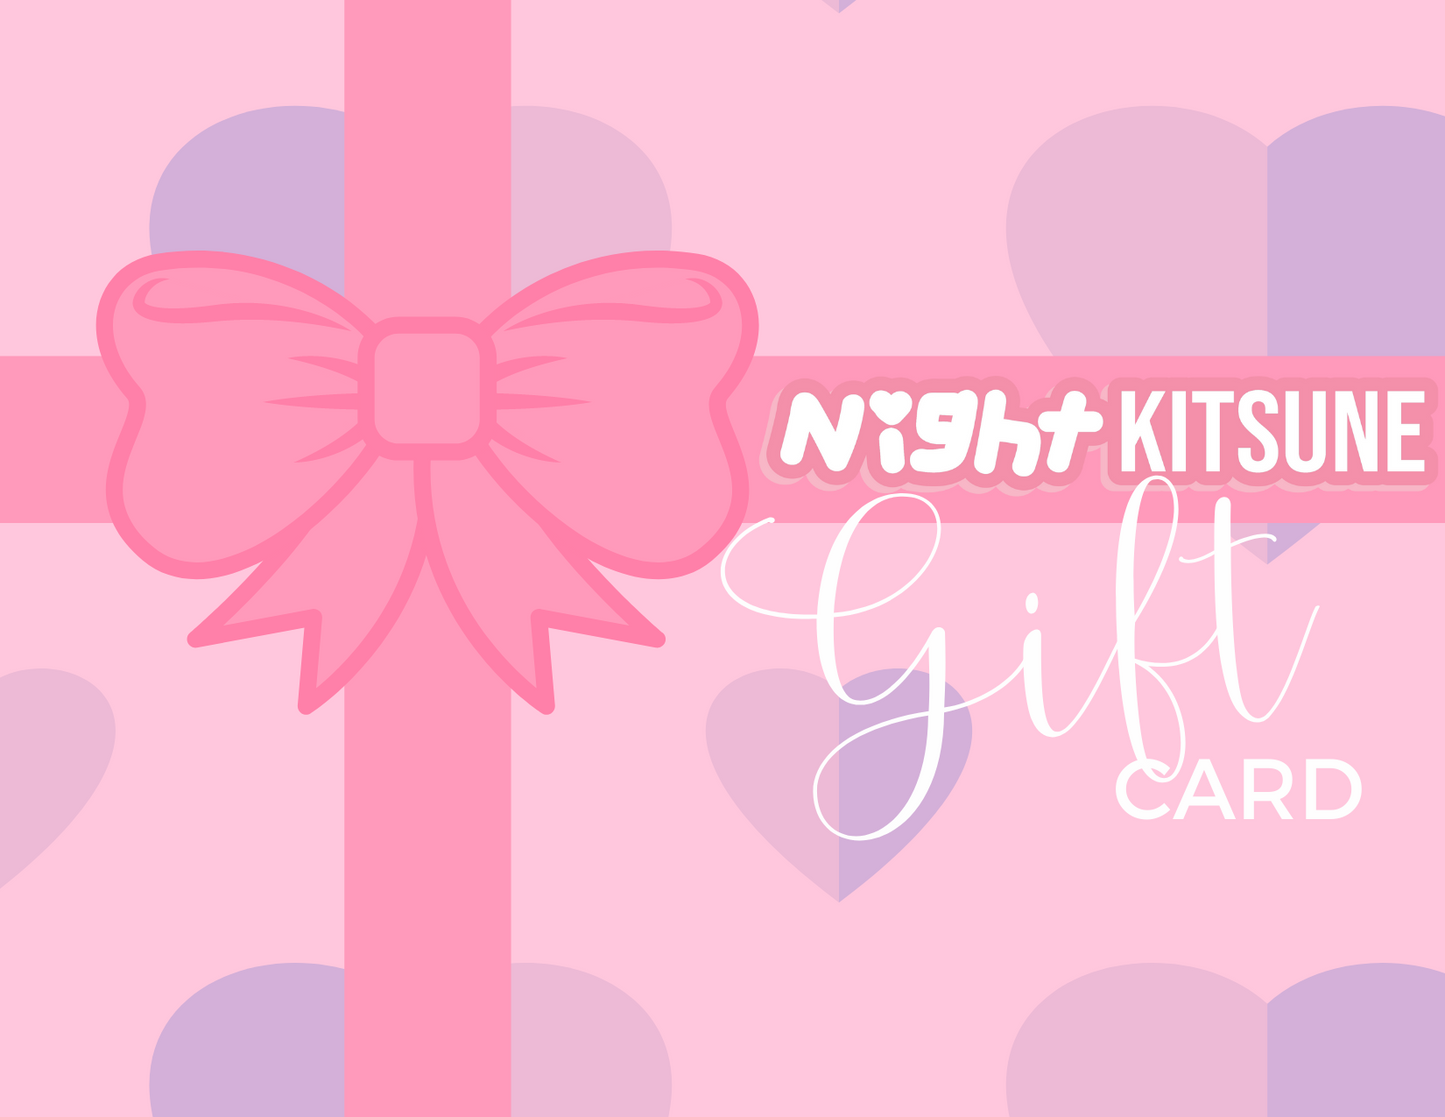 Nightkitsune Gift Card